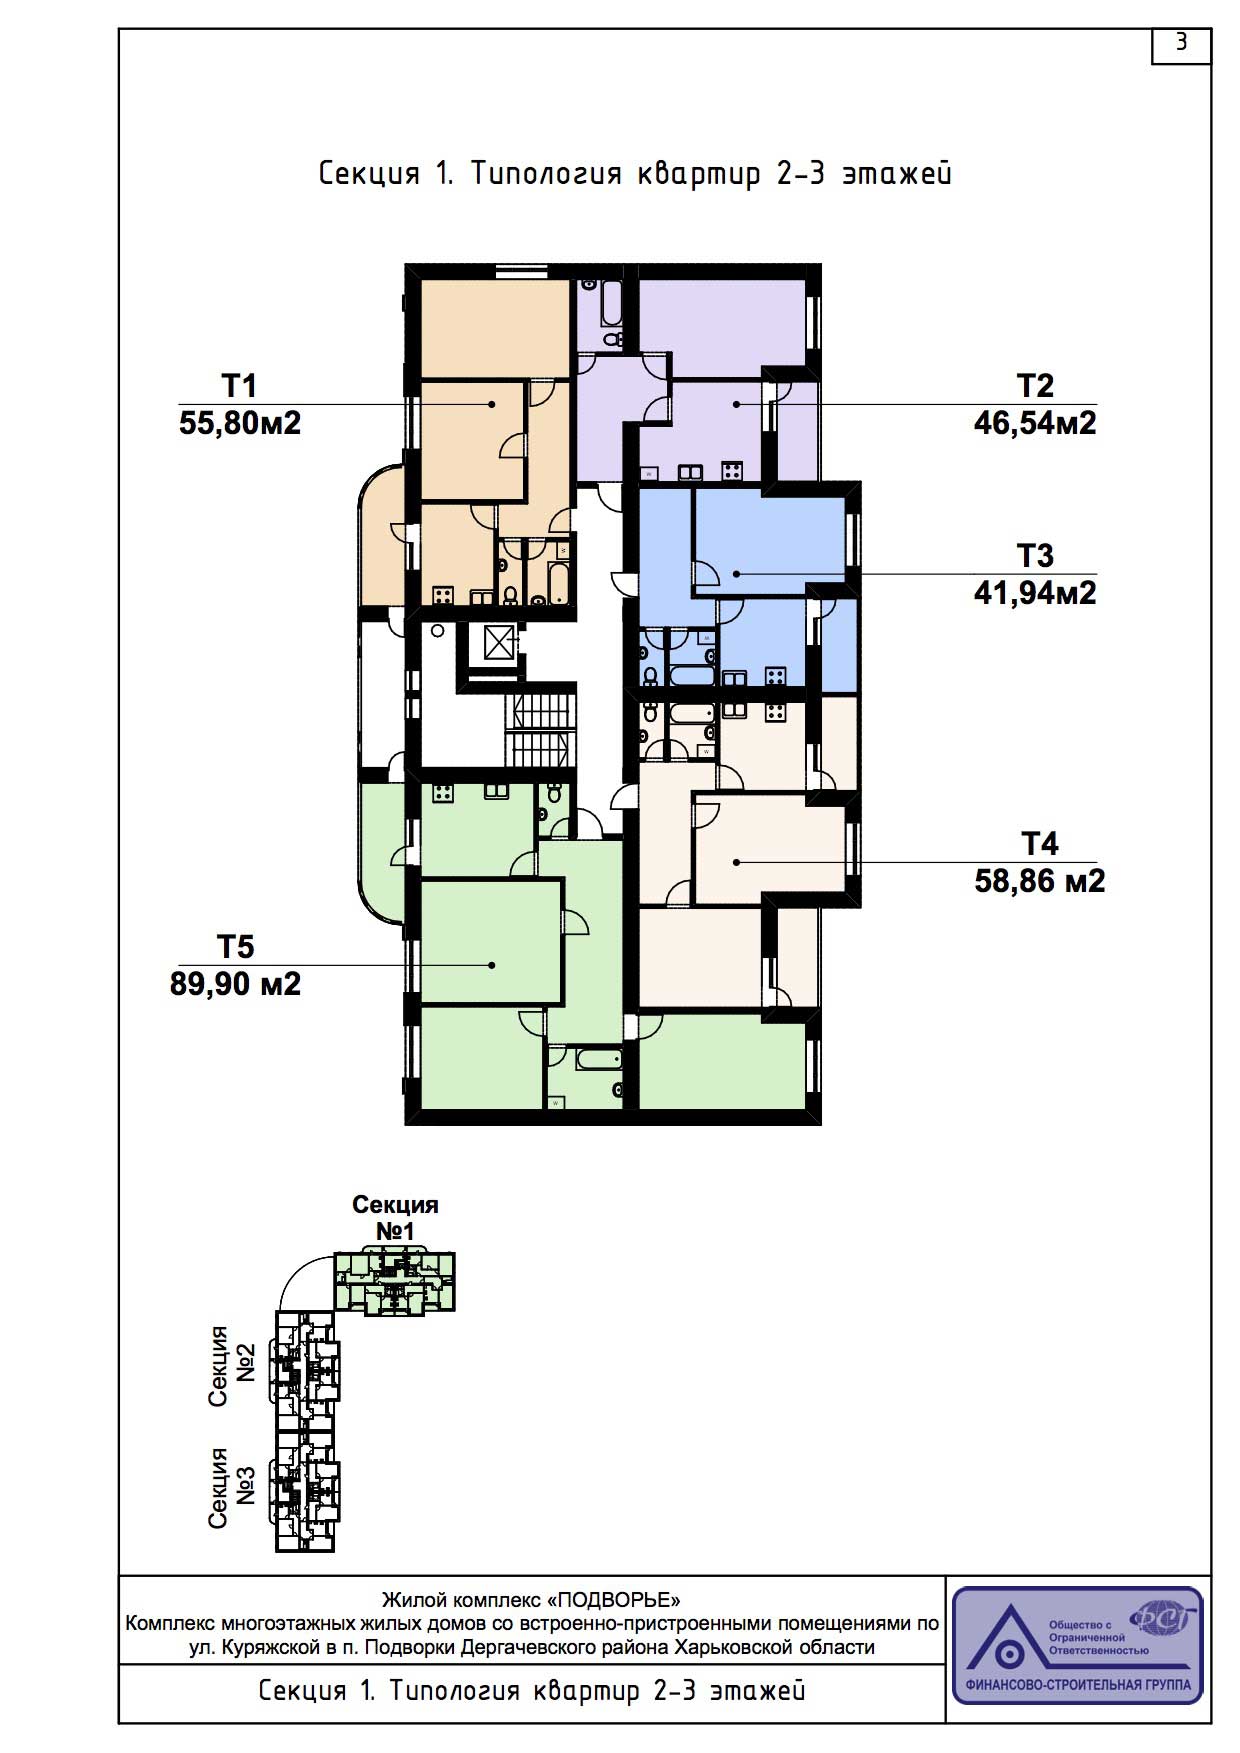 План, ЖК Подворье, секция 1, 2-3 этаж